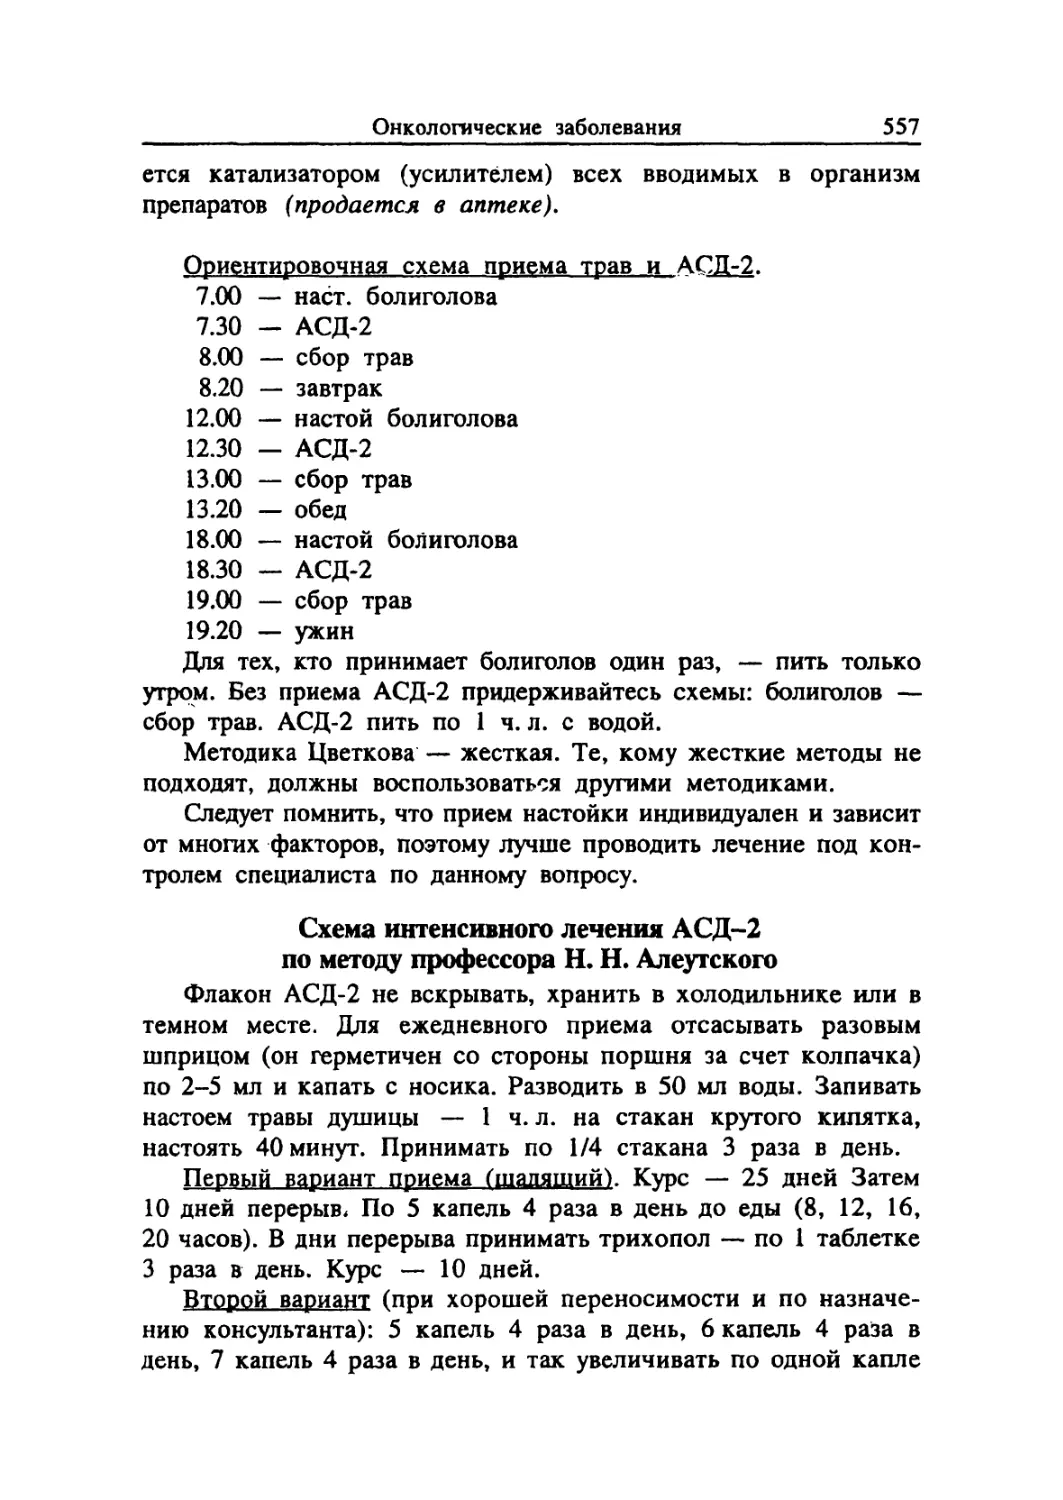 Схема интенсивного лечения АСД-2 по методу профессора Н. Н. Алеутского